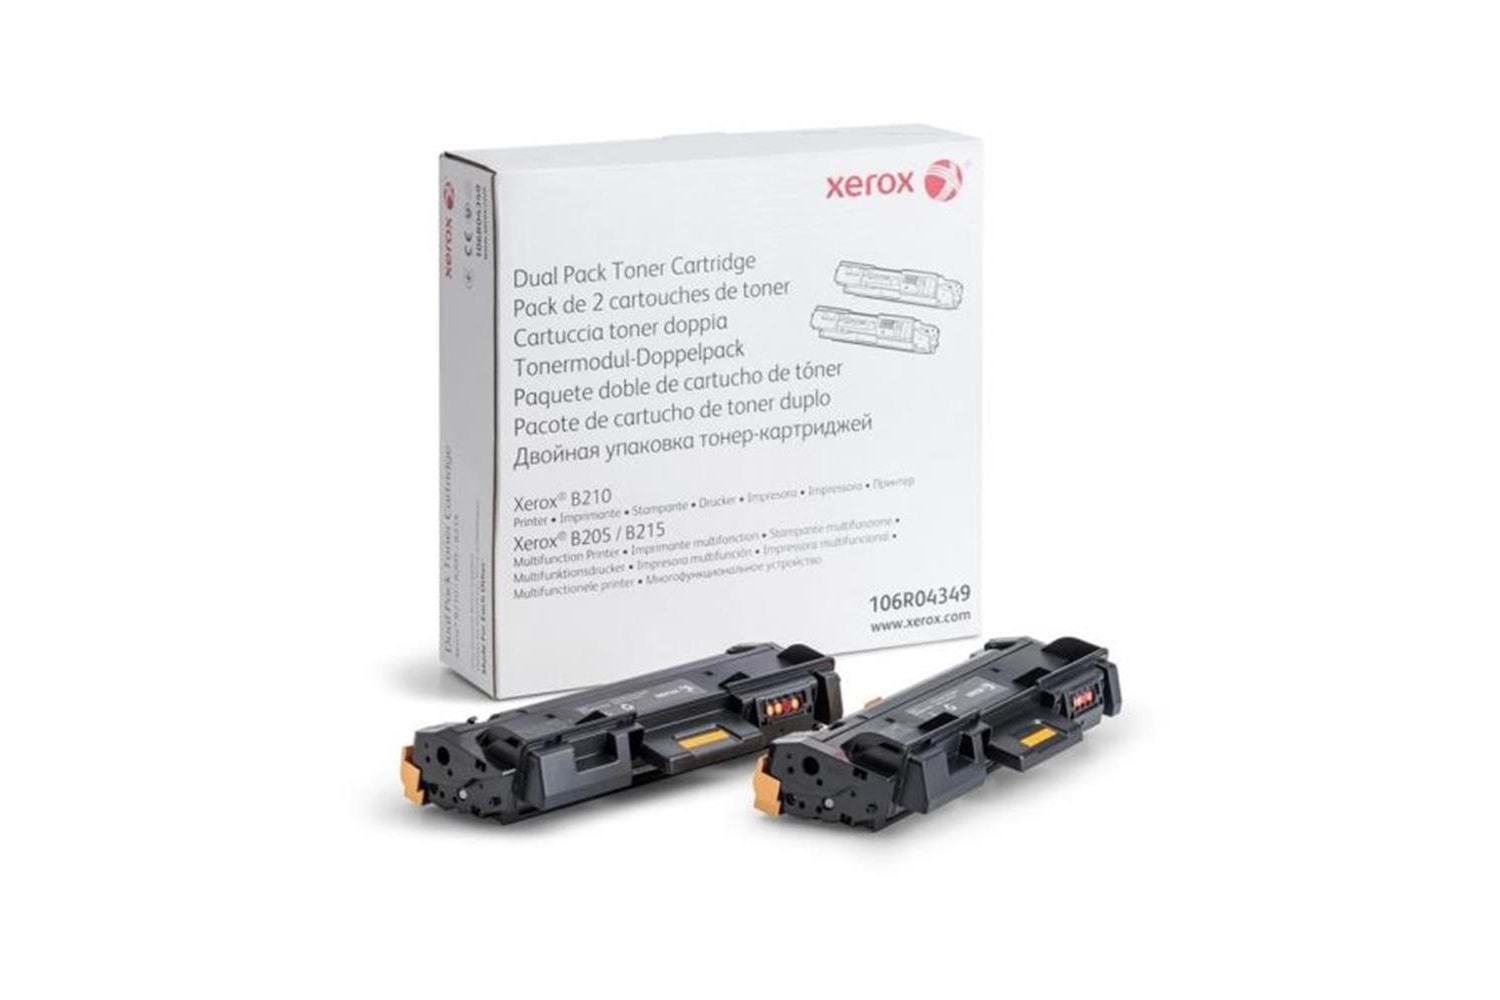 Xerox 106R04349 B210 B205 B215 Dual Pack Toner 6000 Sayfa